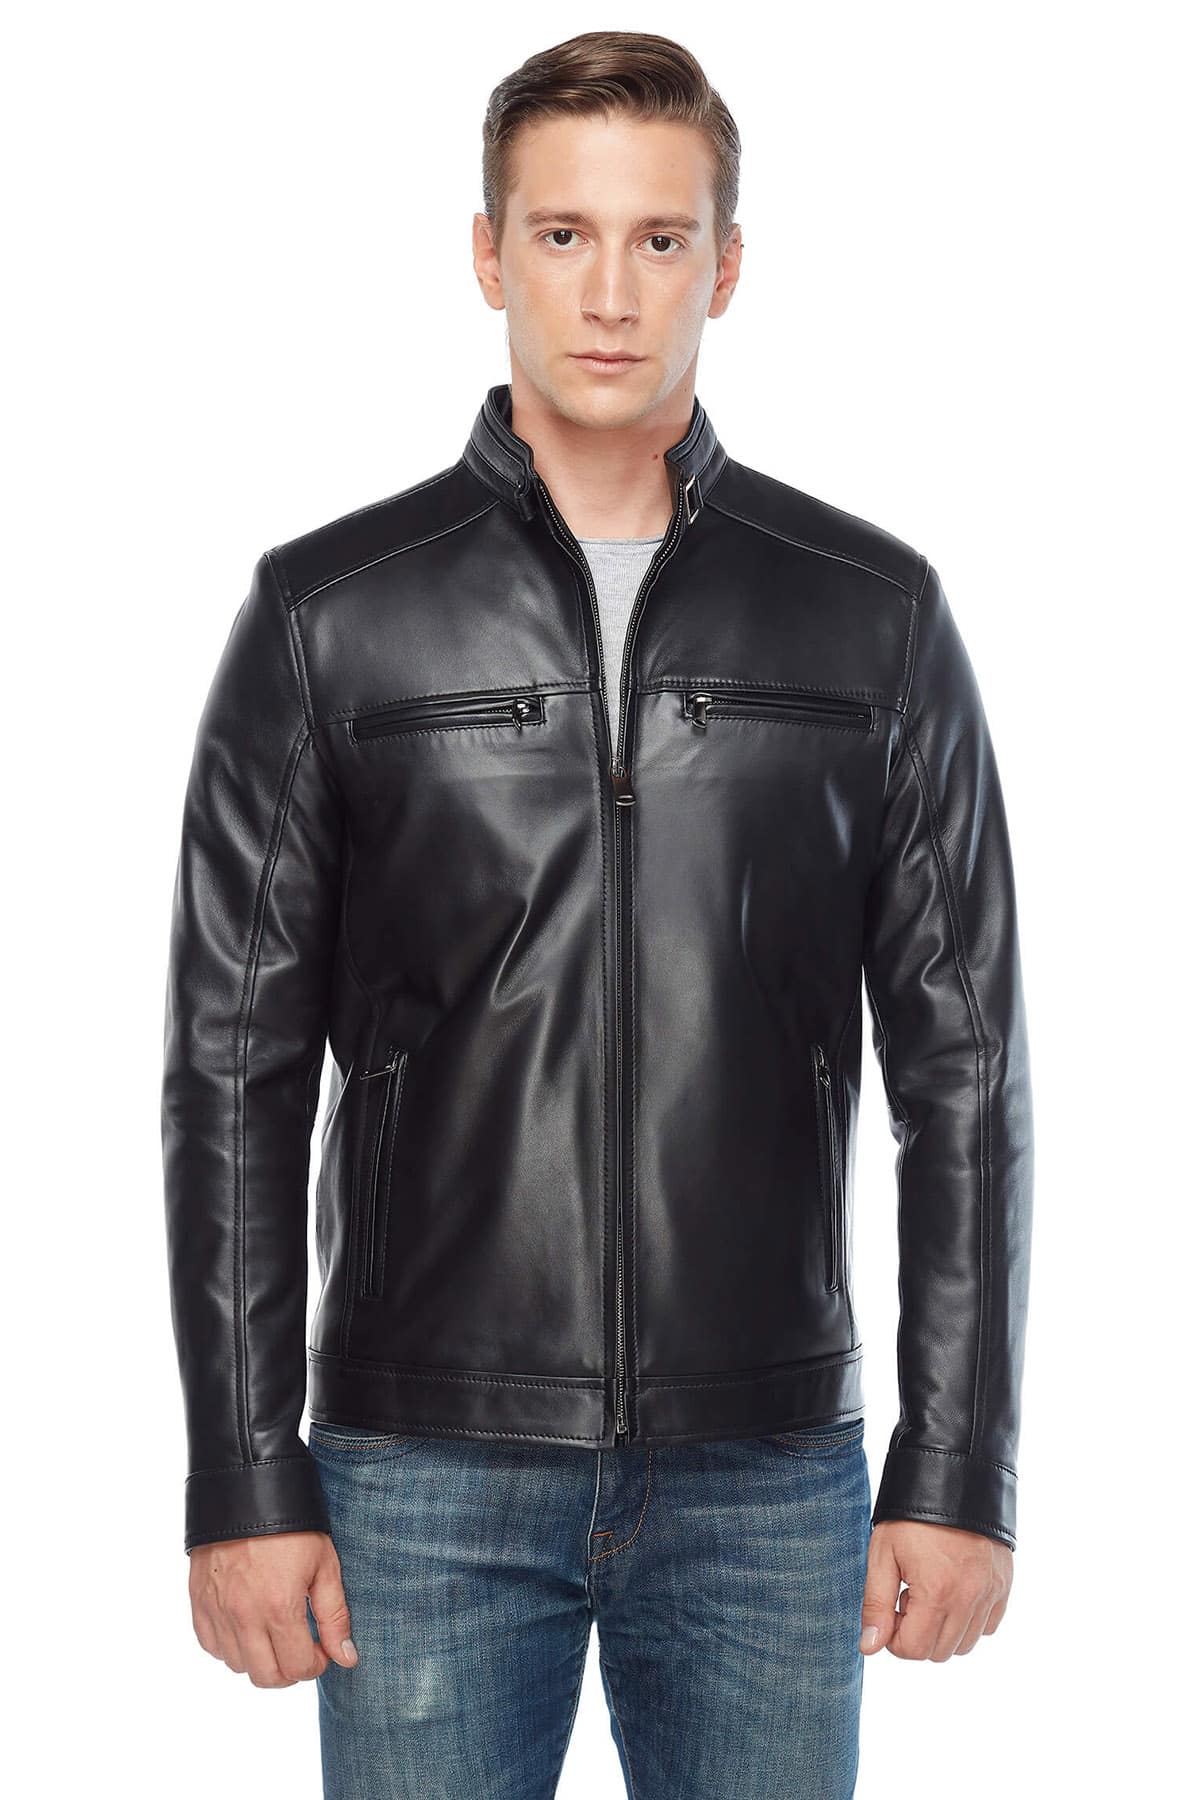 Craig McGinlay Genuine Leather Coat in Black2